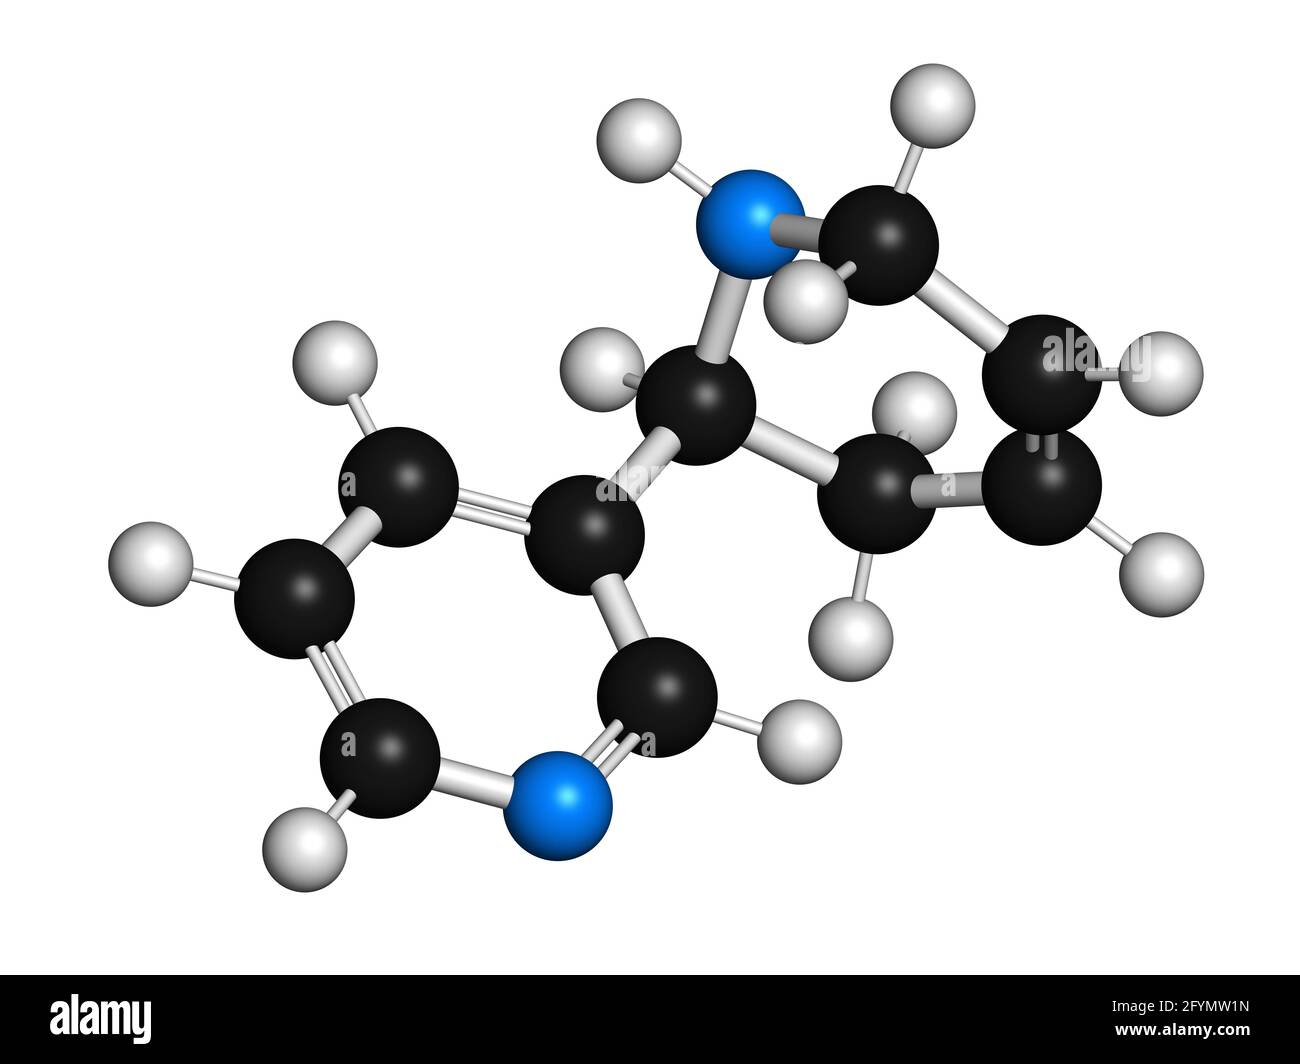 Anatabine alkaloid molecule, illustration Stock Photo